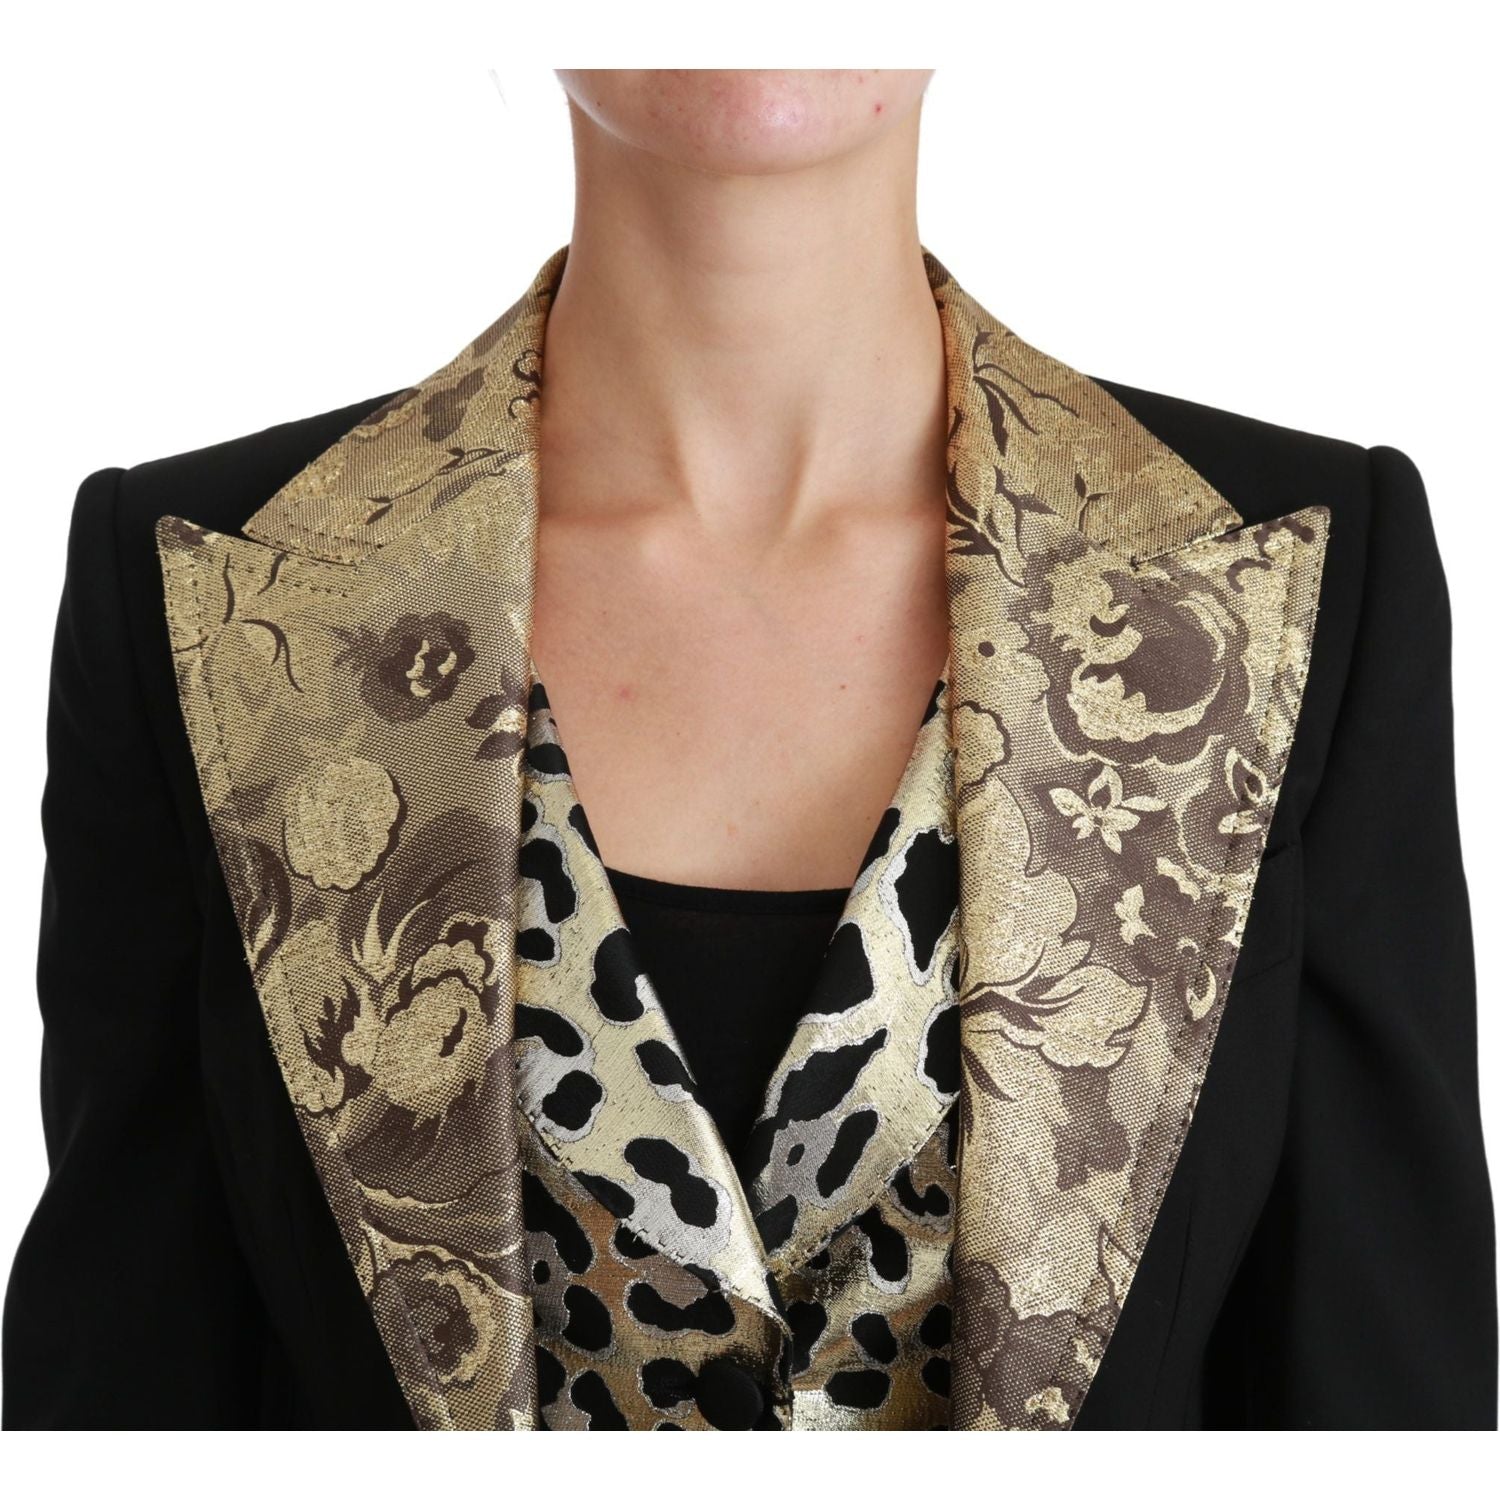 Dolce & Gabbana | Black Jacquard Vest Blazer Coat Wool Jacket | McRichard Designer Brands